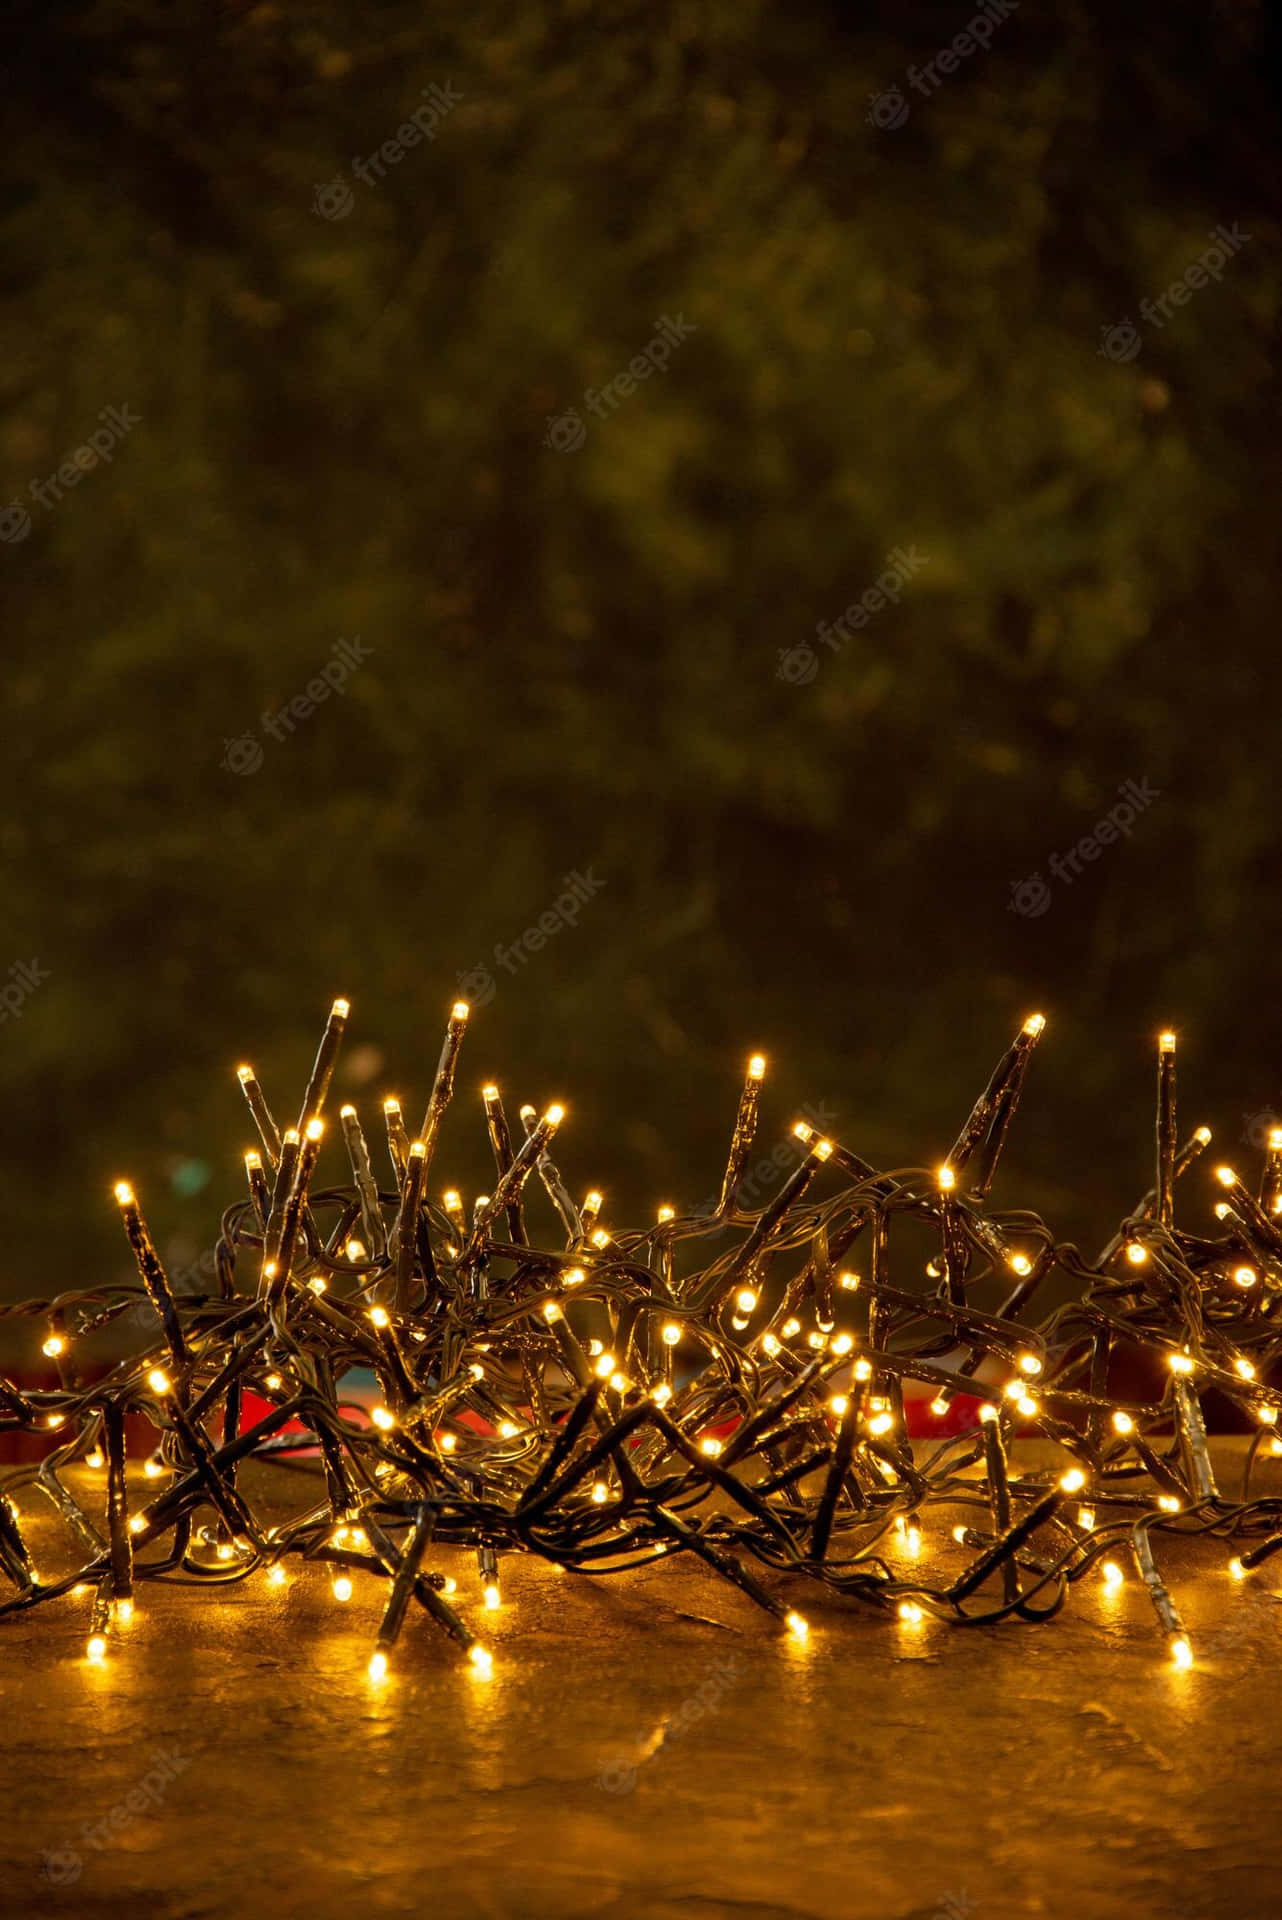 Preparate Para As Festas Com Bonitas Luzes De Natal. Papel de Parede